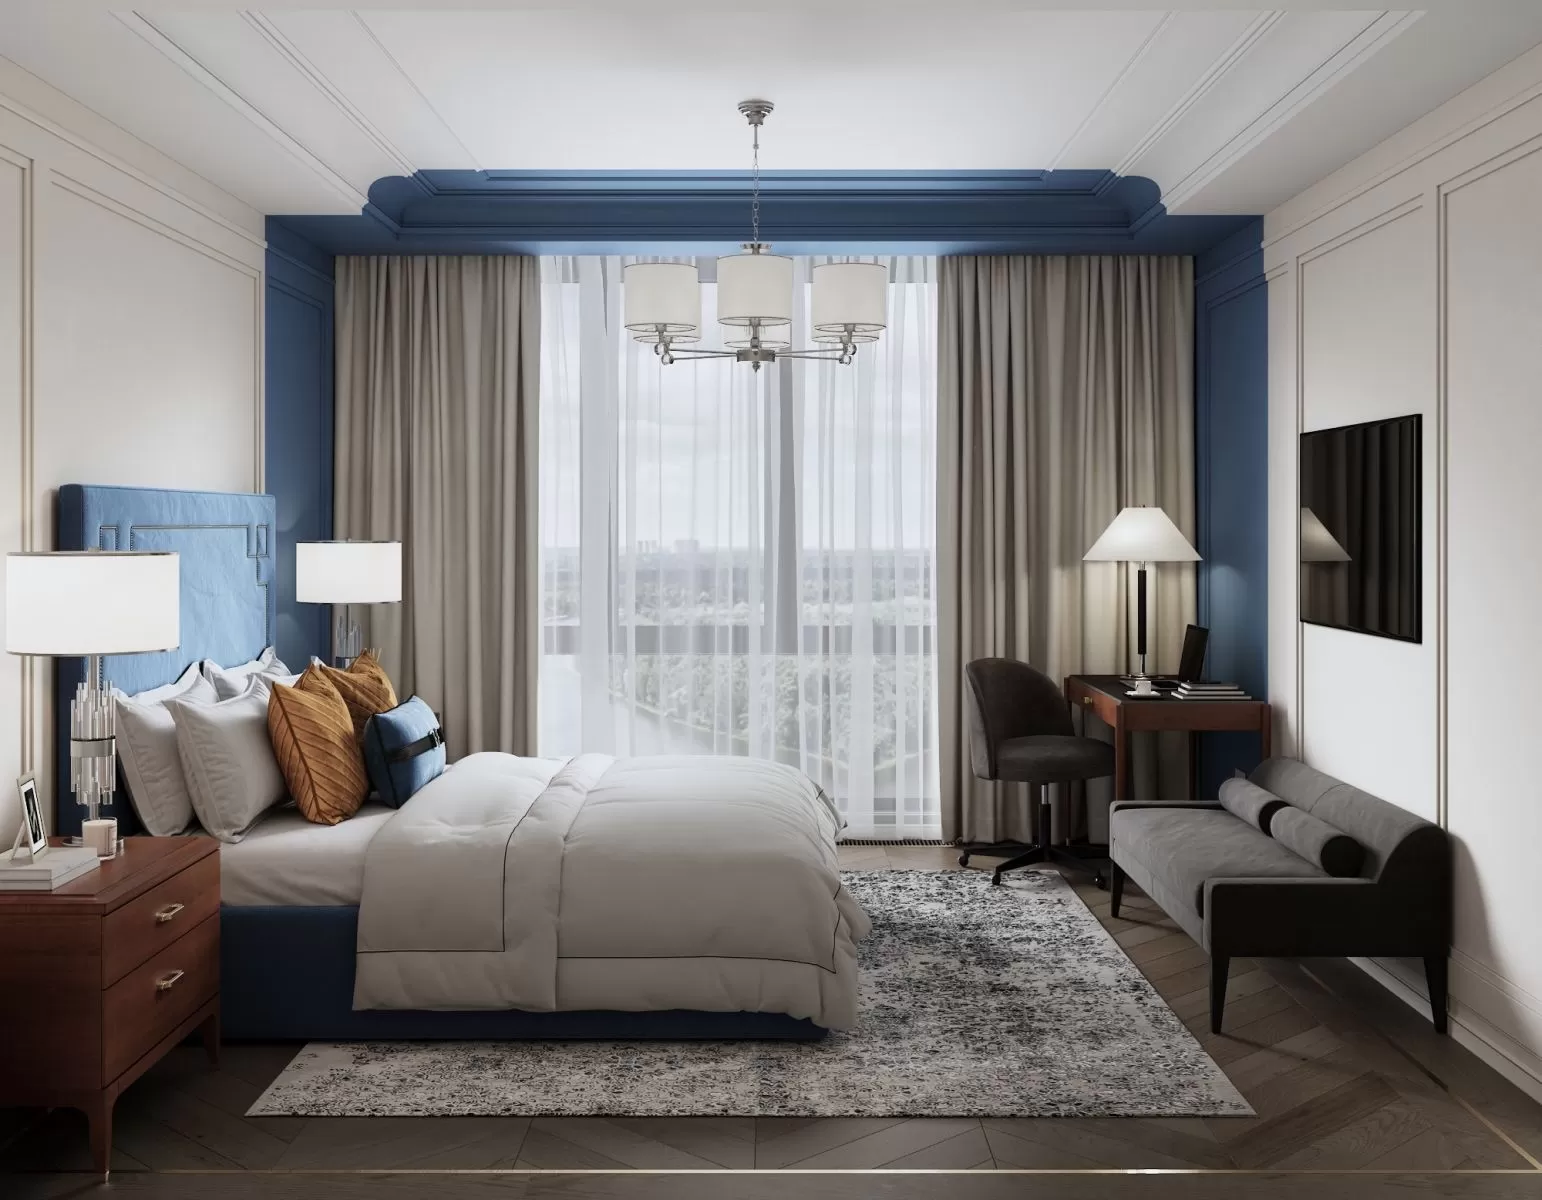 Phòng ngủ sử dụng tone màu chủ đạo là xanh dương tạo nét đẹp điềm tĩnh, thư thái 